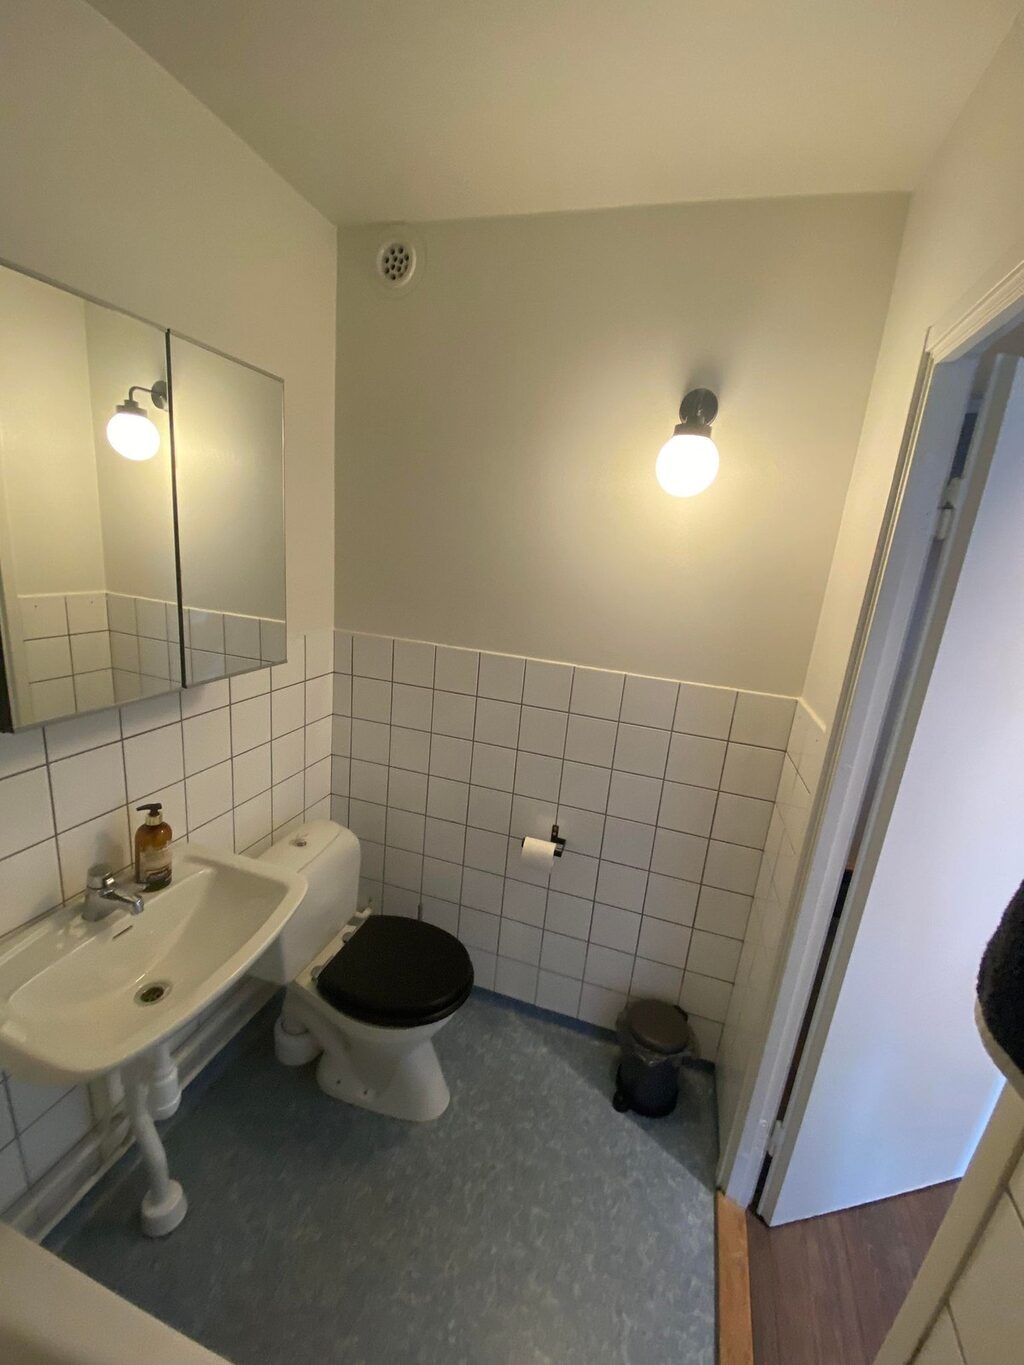 Lägenhetsbyte - Crafoords väg 14, 113 24 Stockholm